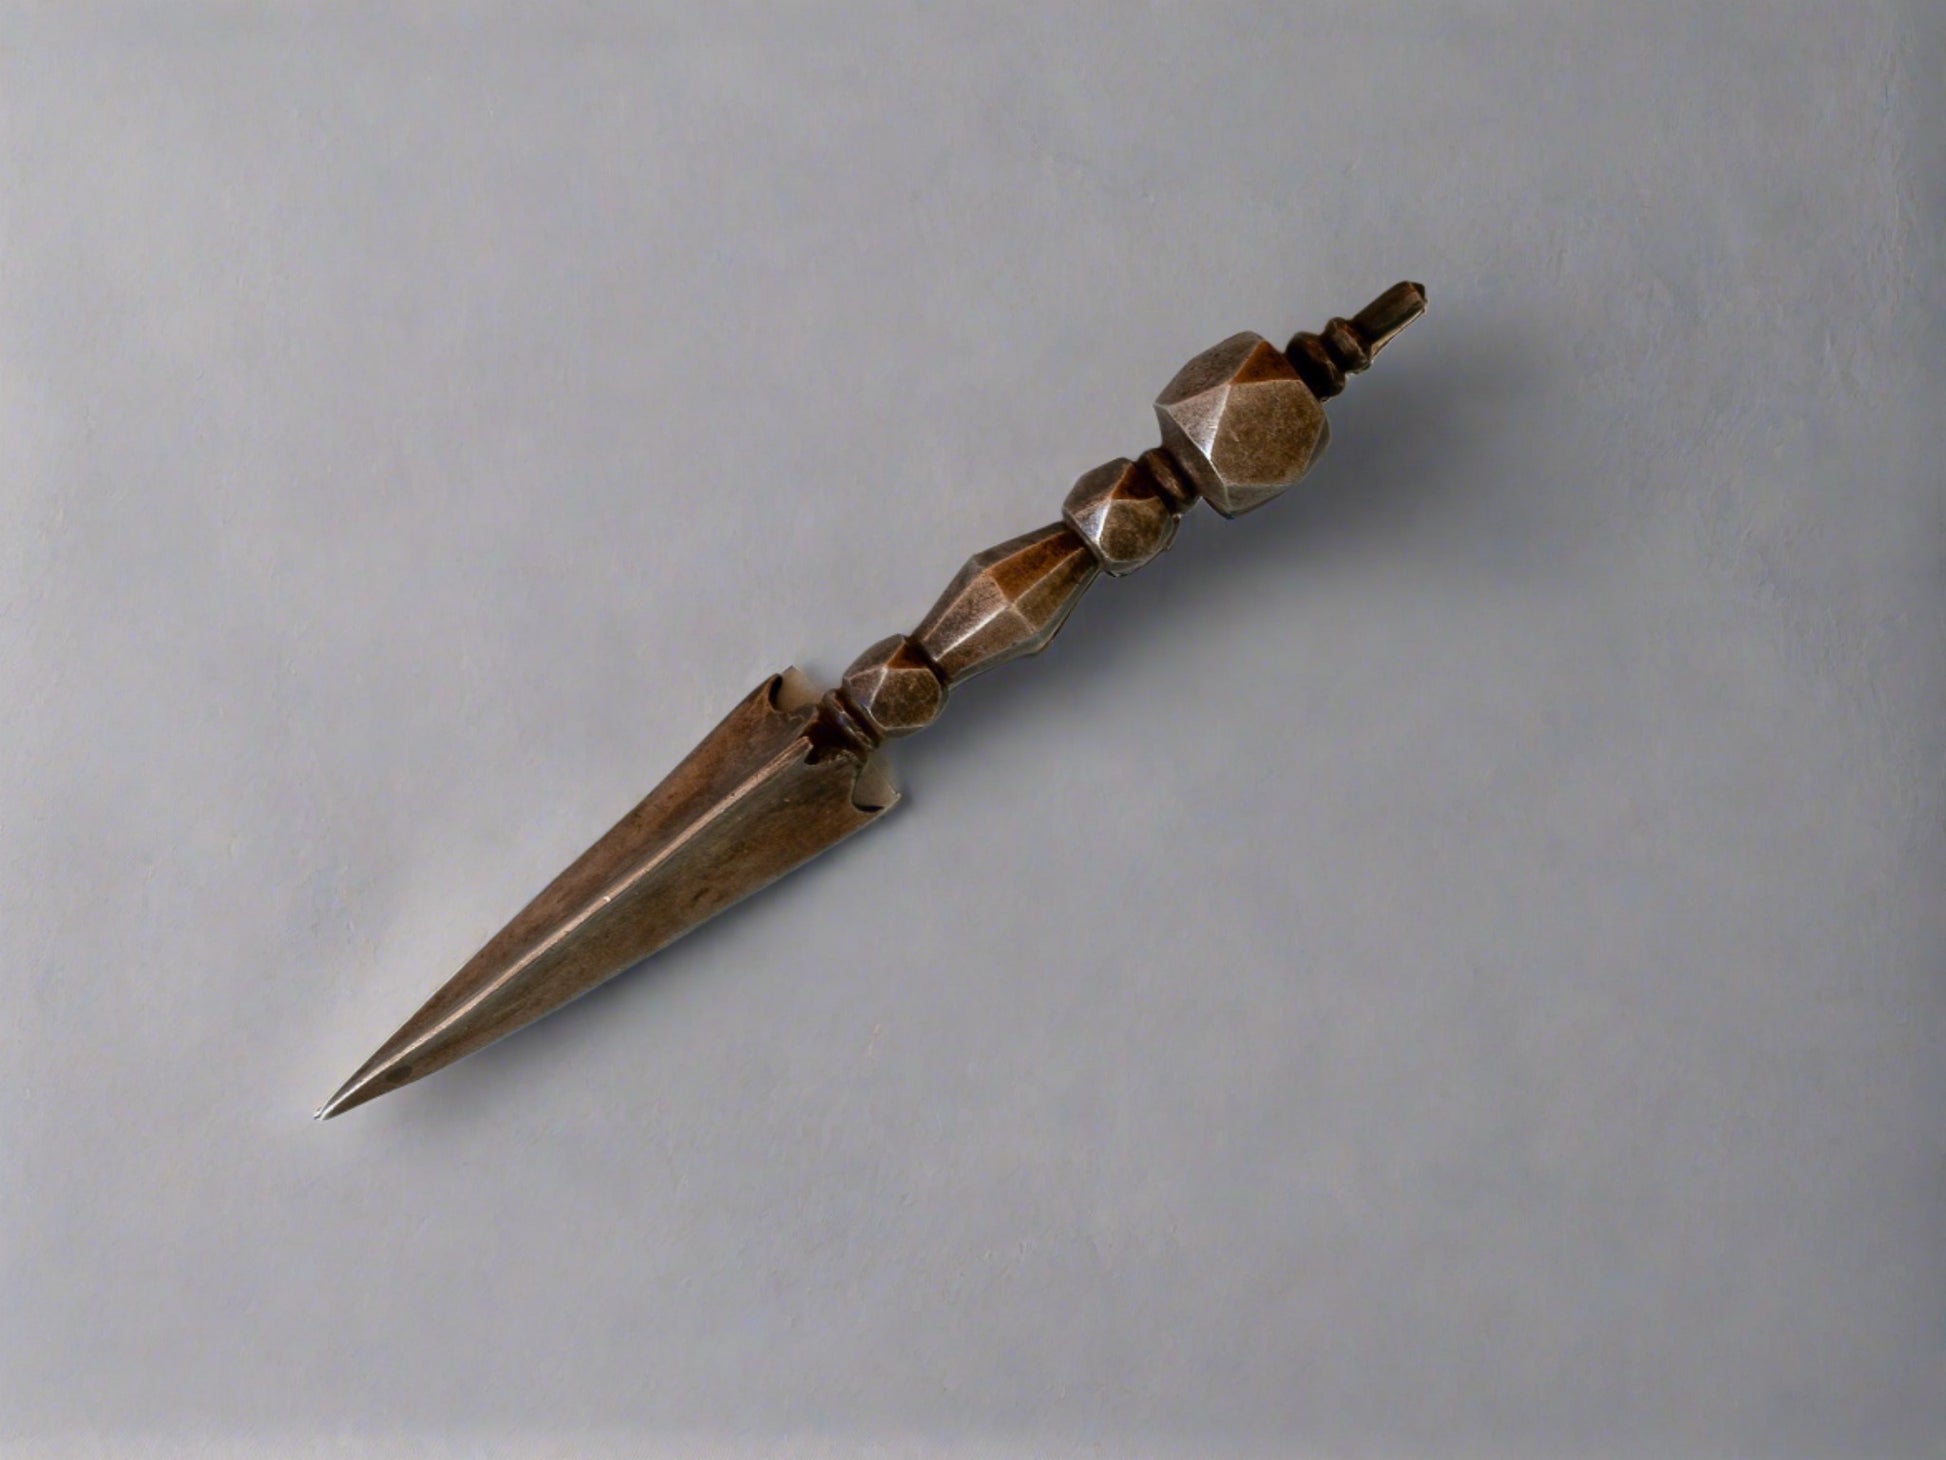 iron phurba dagger viewed sideways against grey backdrop